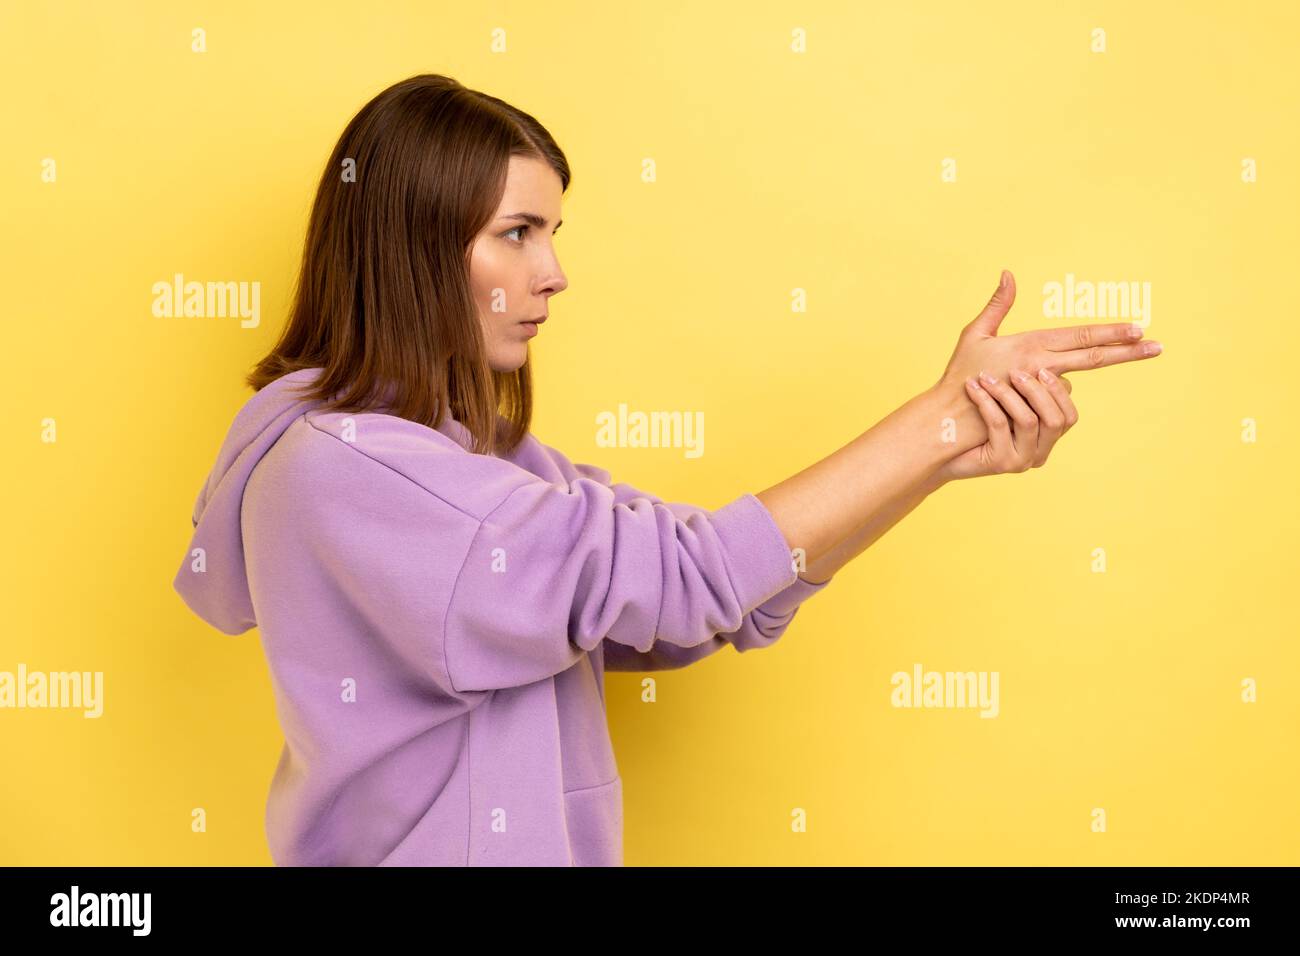 Ich werde Euch töten. Seitenansicht einer wütenden Frau, die mit den Fingergewehren auf die Kamera zeigt, mit dem Schießen droht, die Hände imitieren die Waffe und tragen einen violetten Hoodie. Innenaufnahme des Studios isoliert auf gelbem Hintergrund. Stockfoto